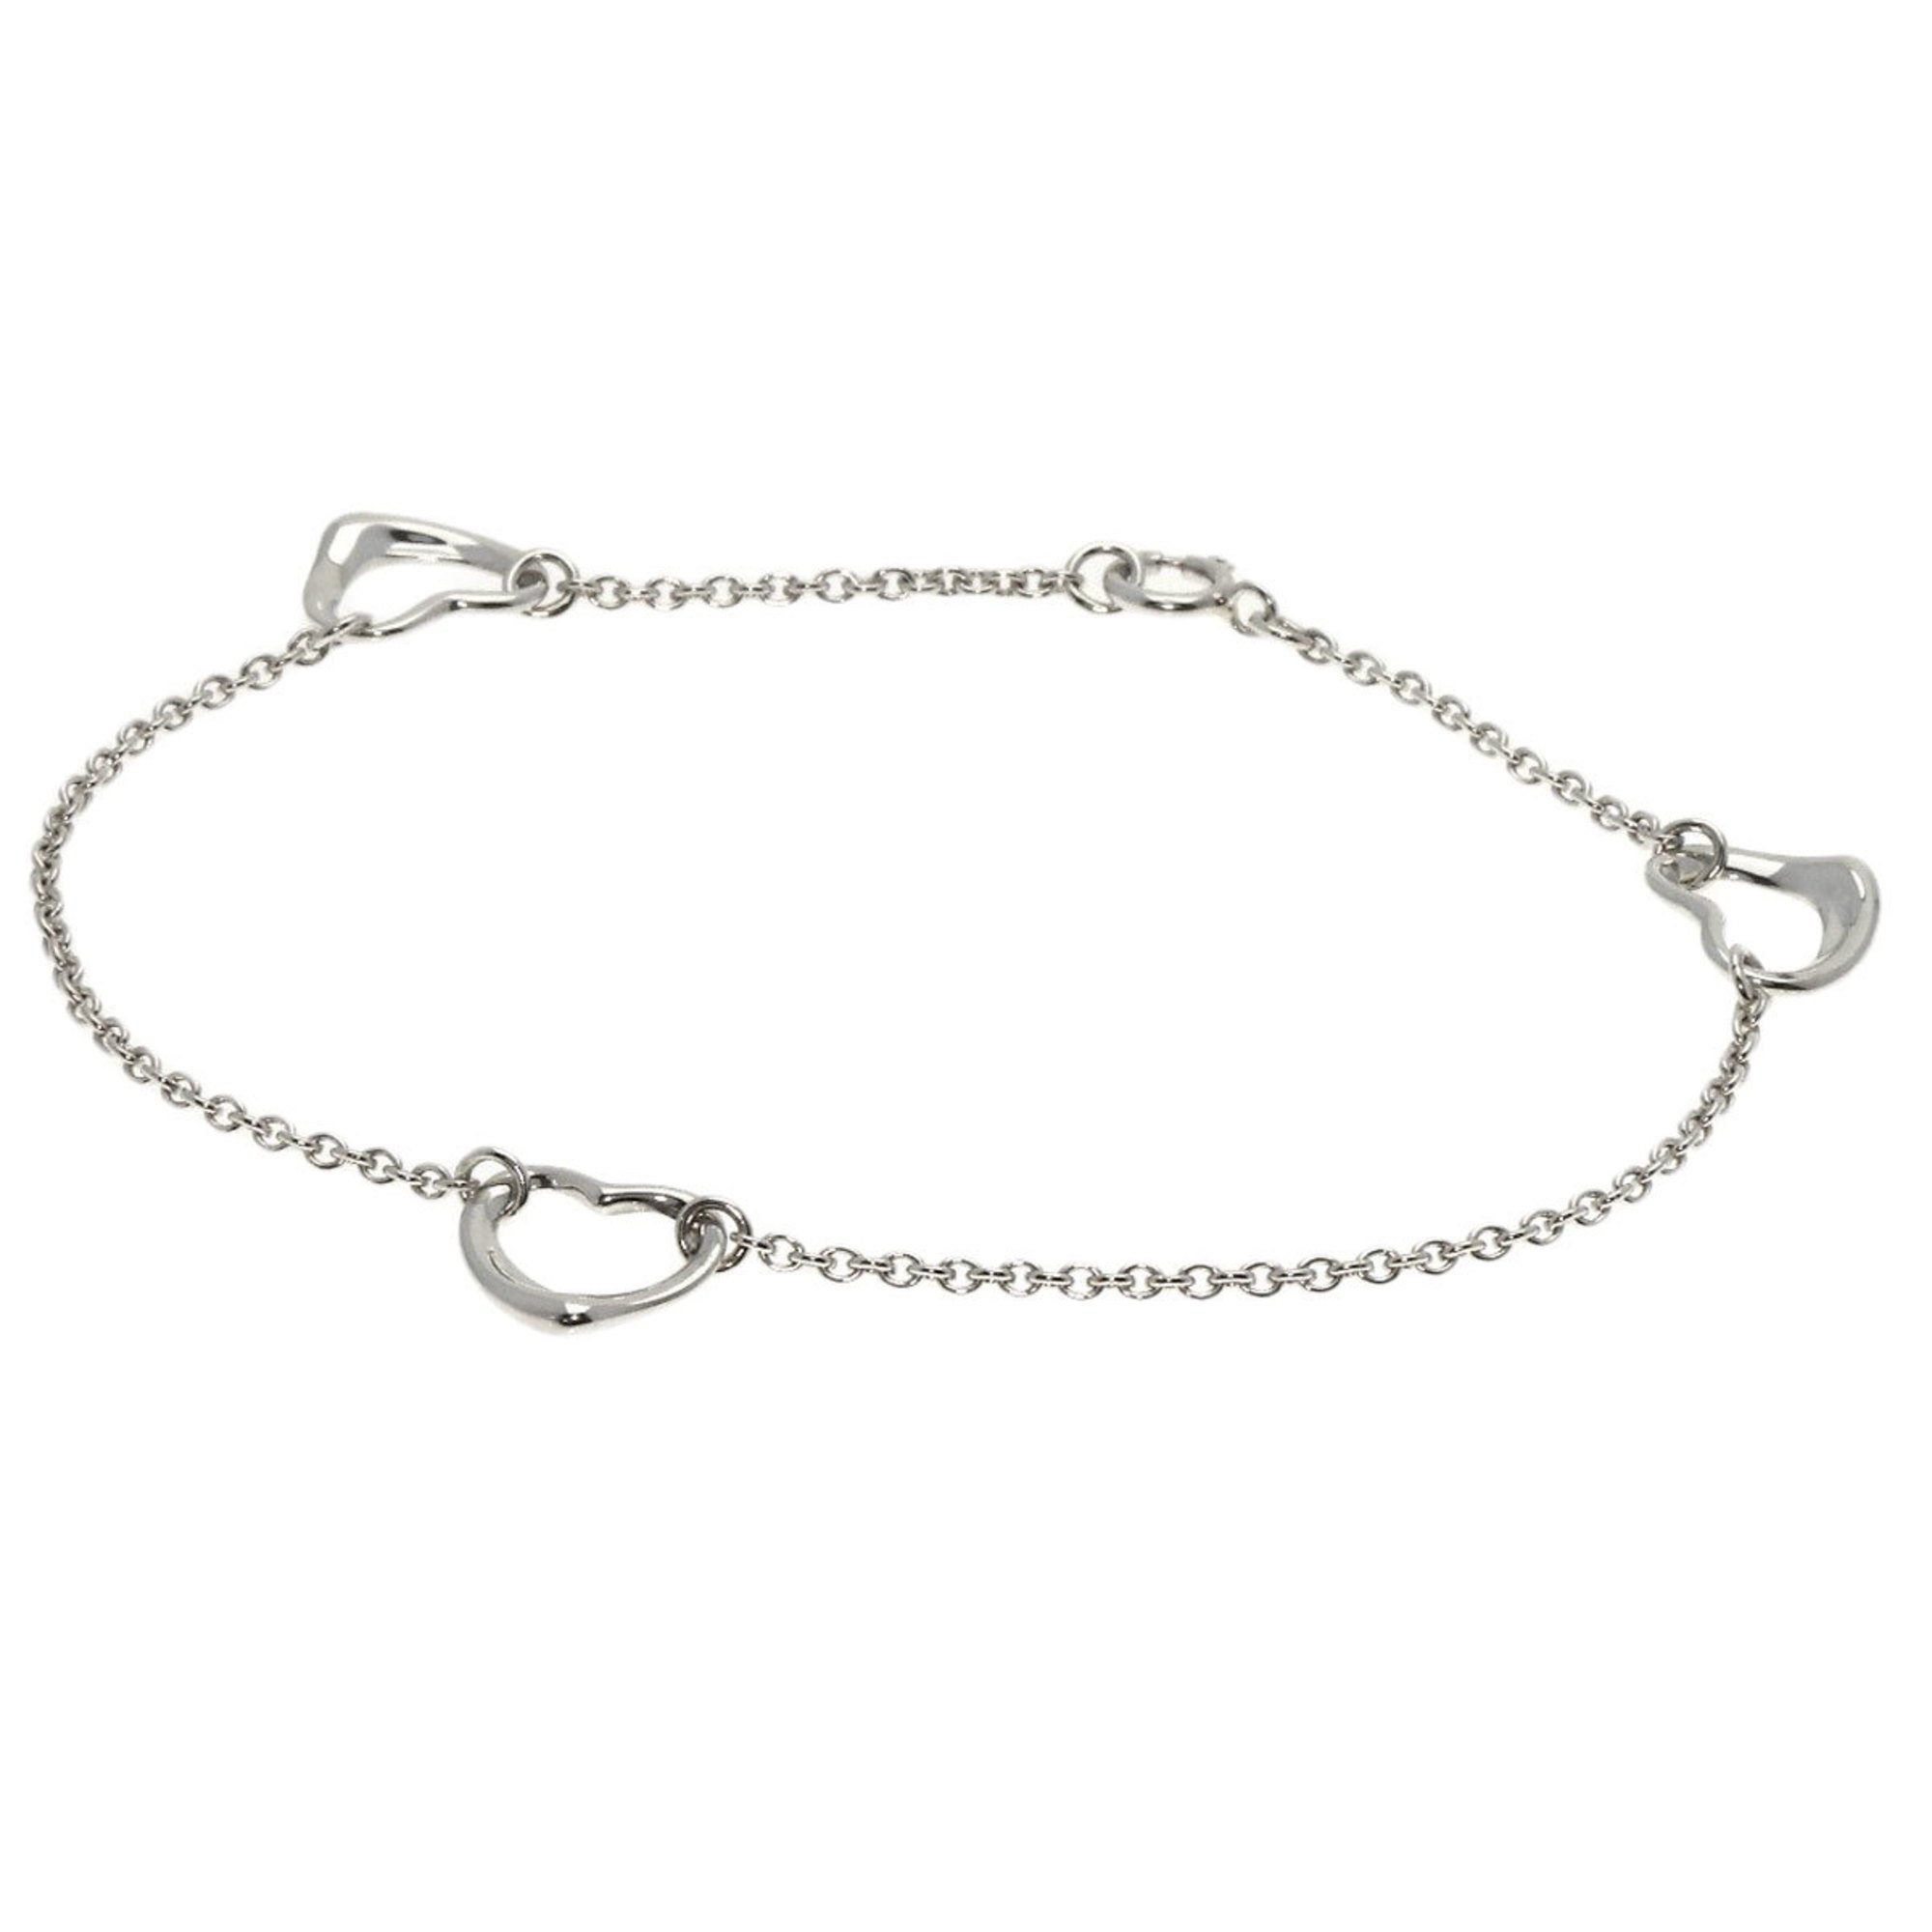 Tiffany heart bracelet silver ladies